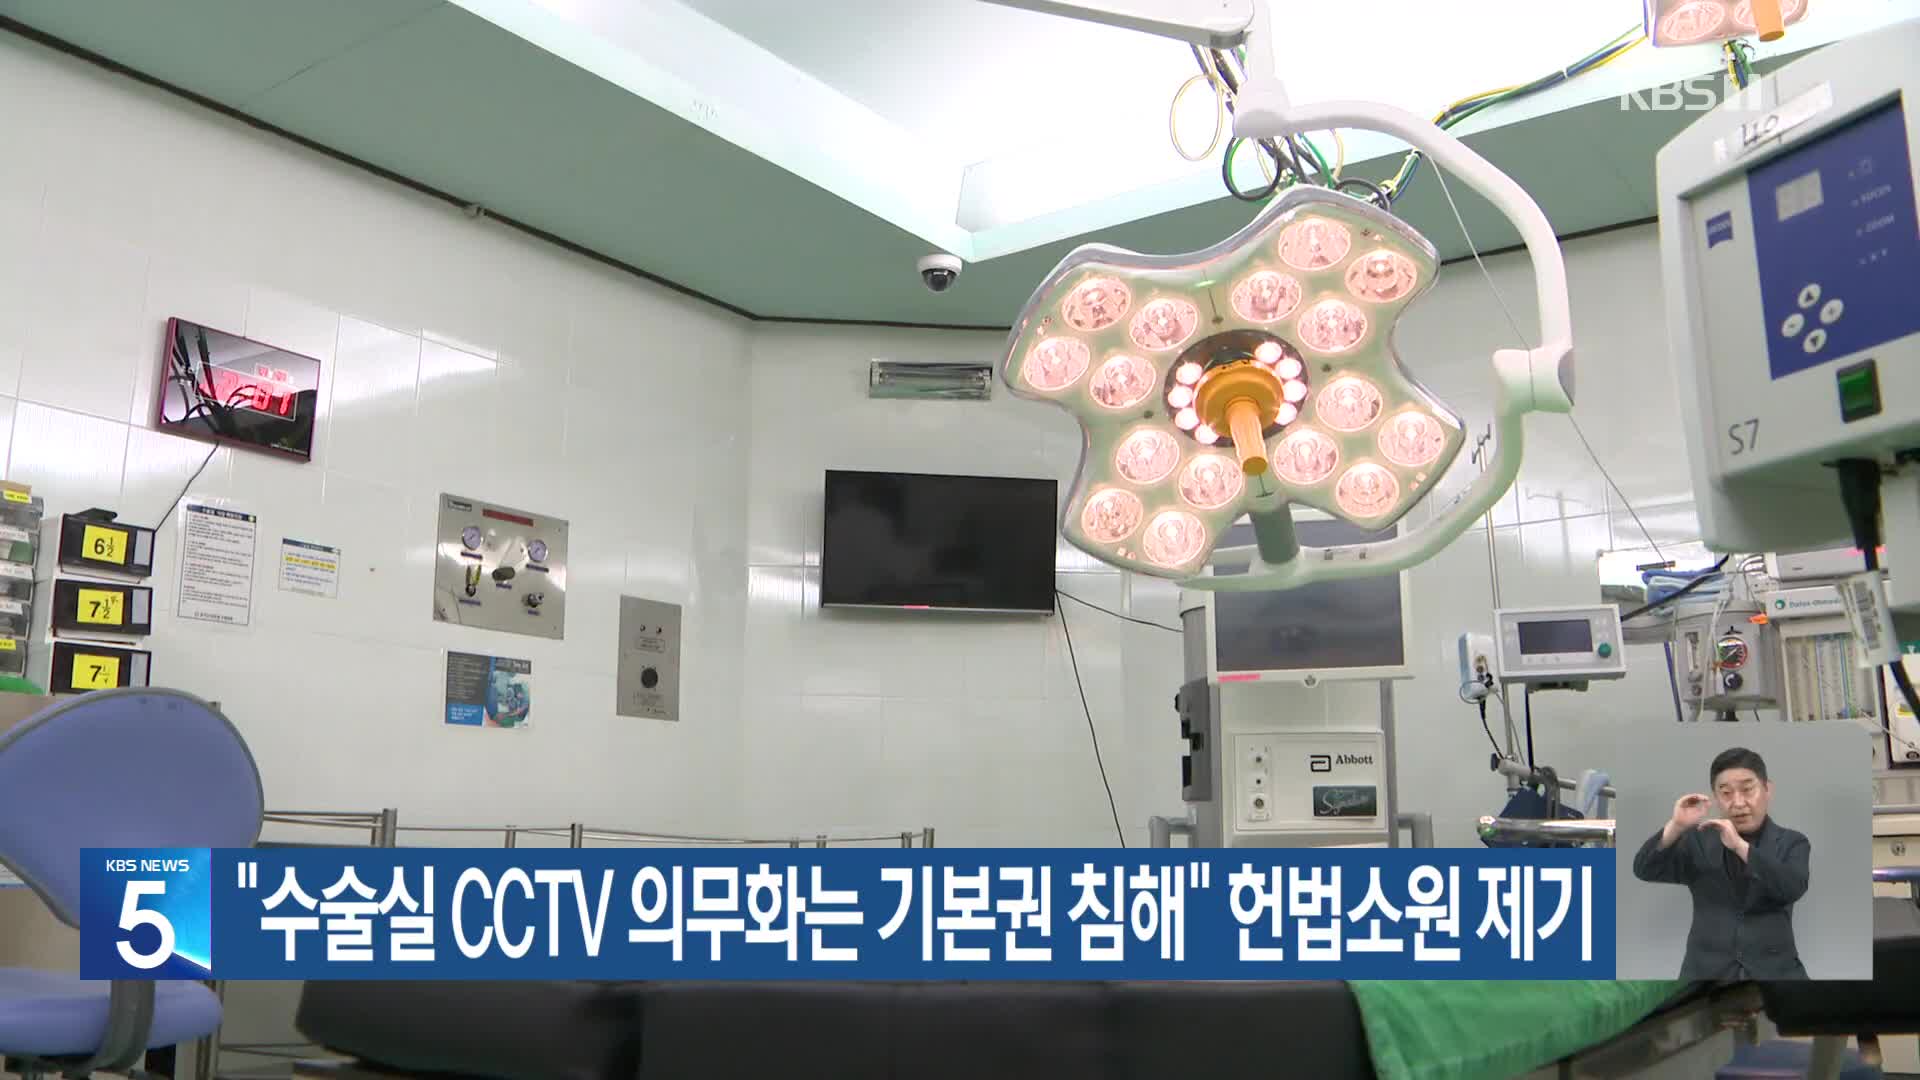 “수술실 CCTV 의무화는 기본권 침해” 헌법소원 제기